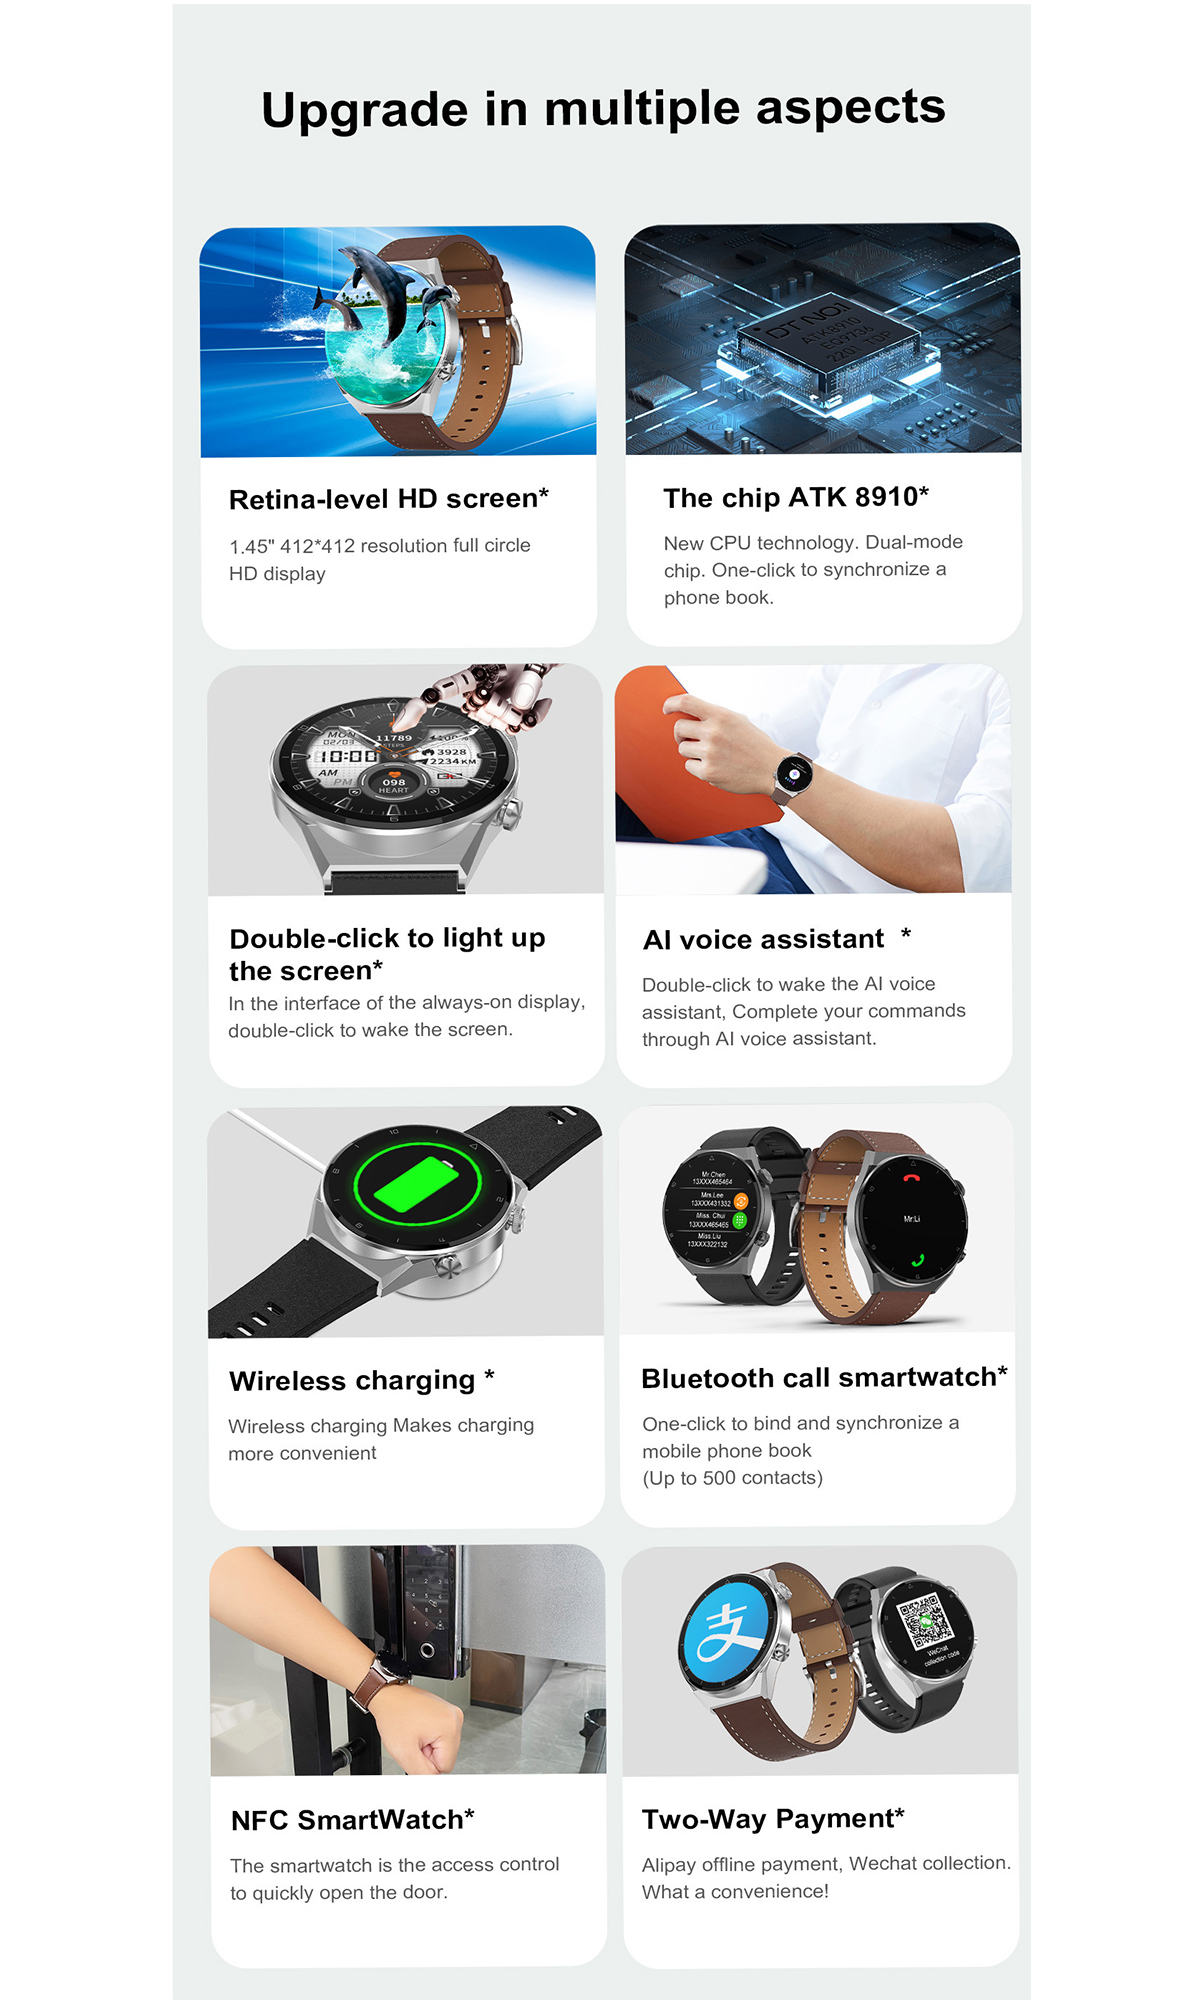 Smartwatch Silikon, Zahlungsfunktion Sport-Smartwatch Herzfrequenzmonitor mit Silber BRIGHTAKE & Drahtloser